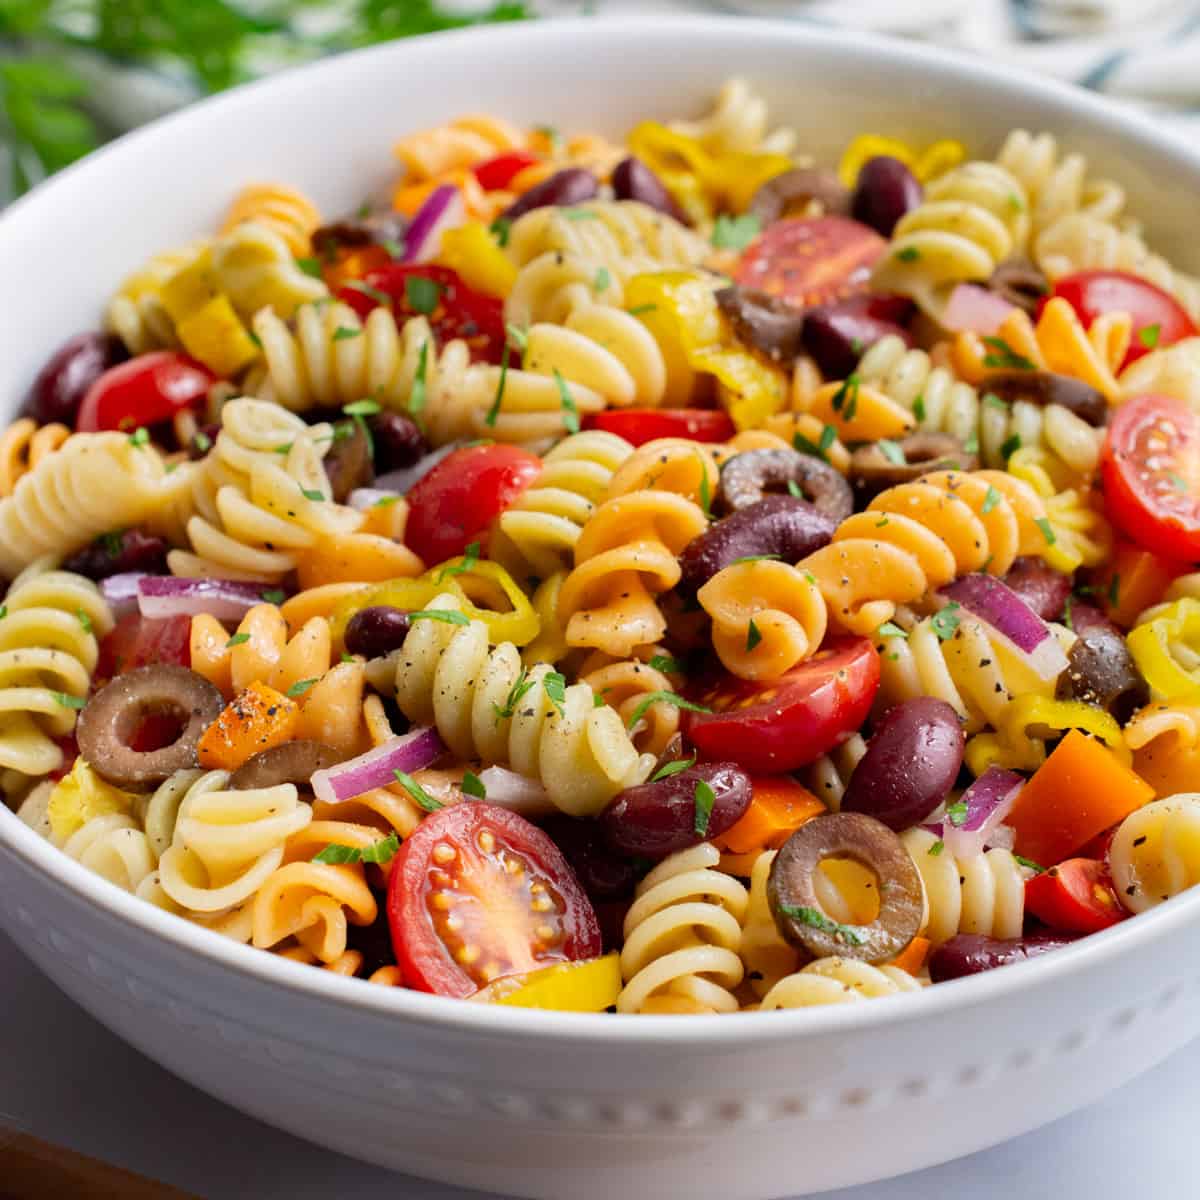 vegan pasta salad in a white serving bowl.